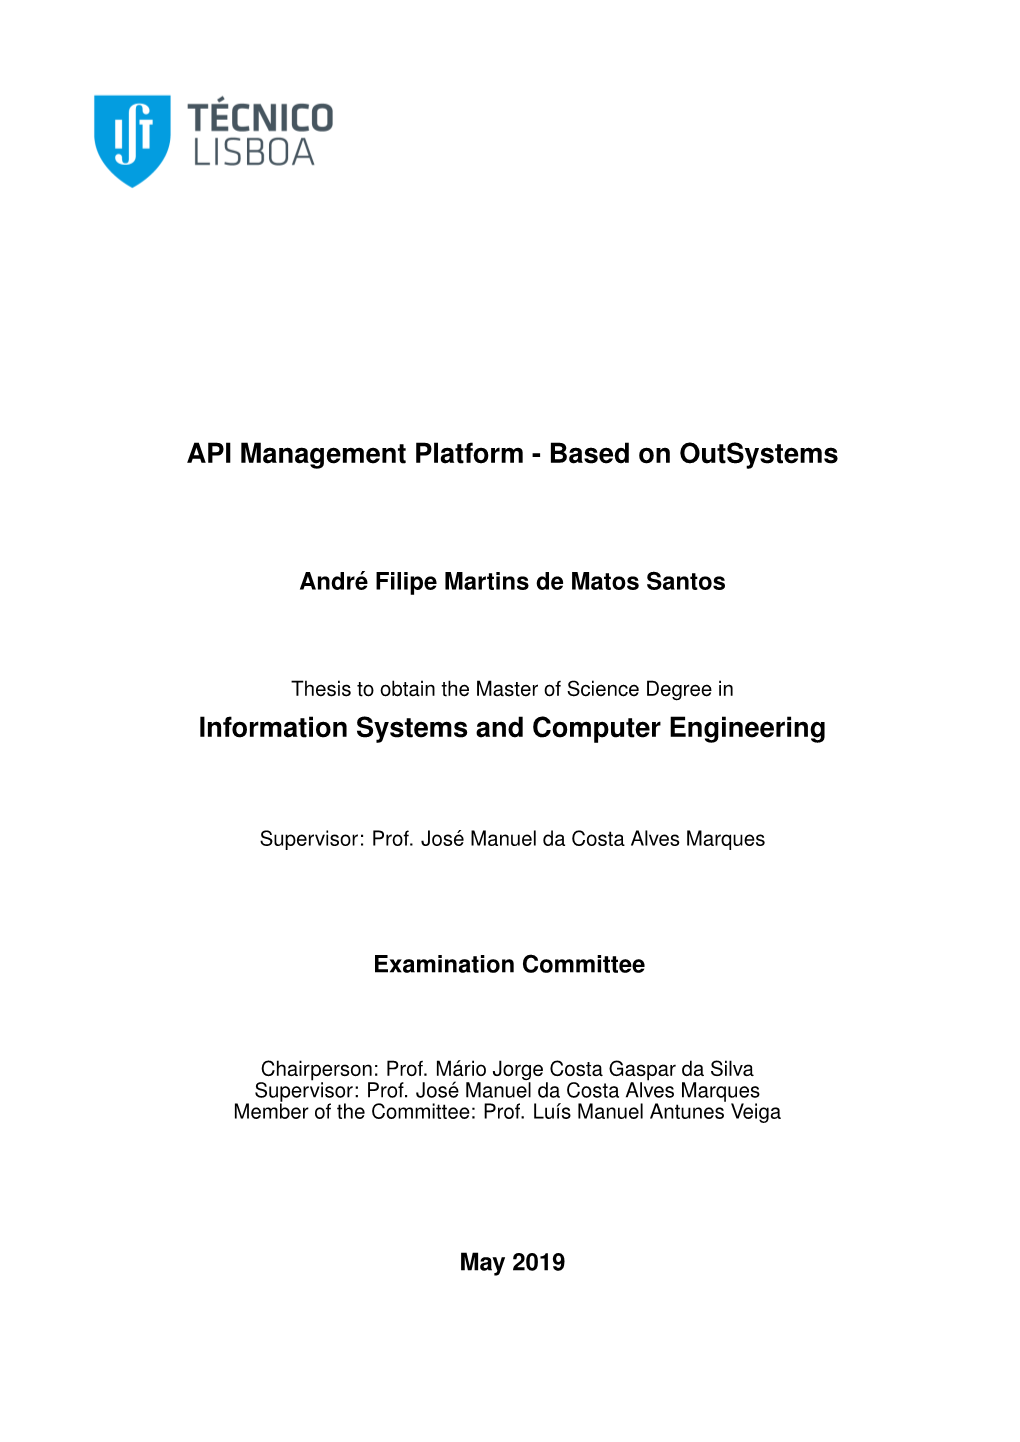 API Management Platform - Based on Outsystems